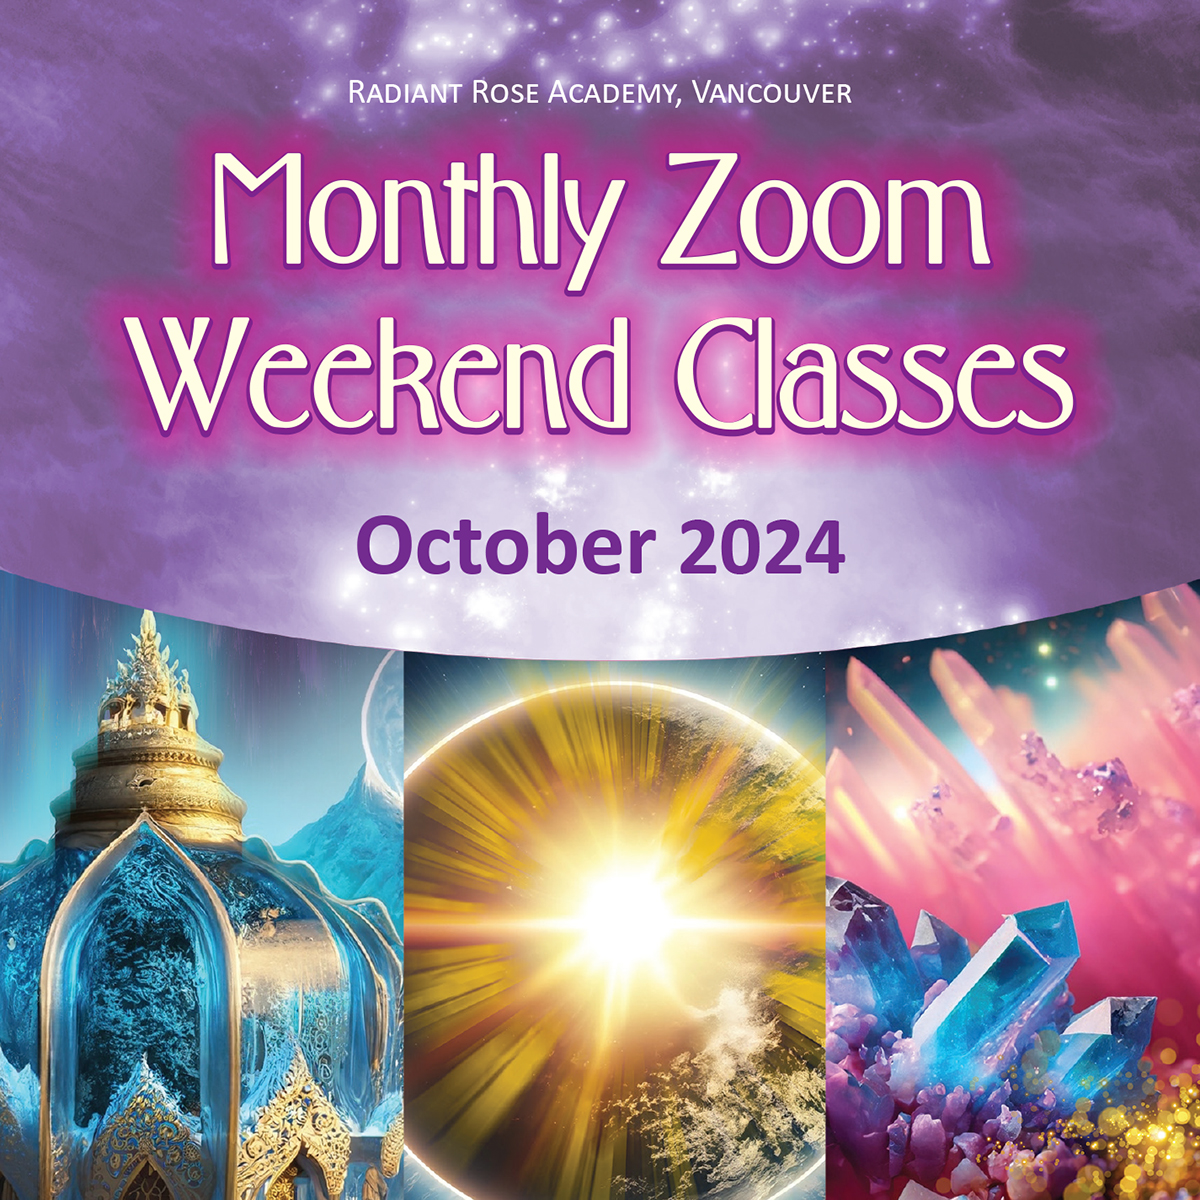 Zoom Classes